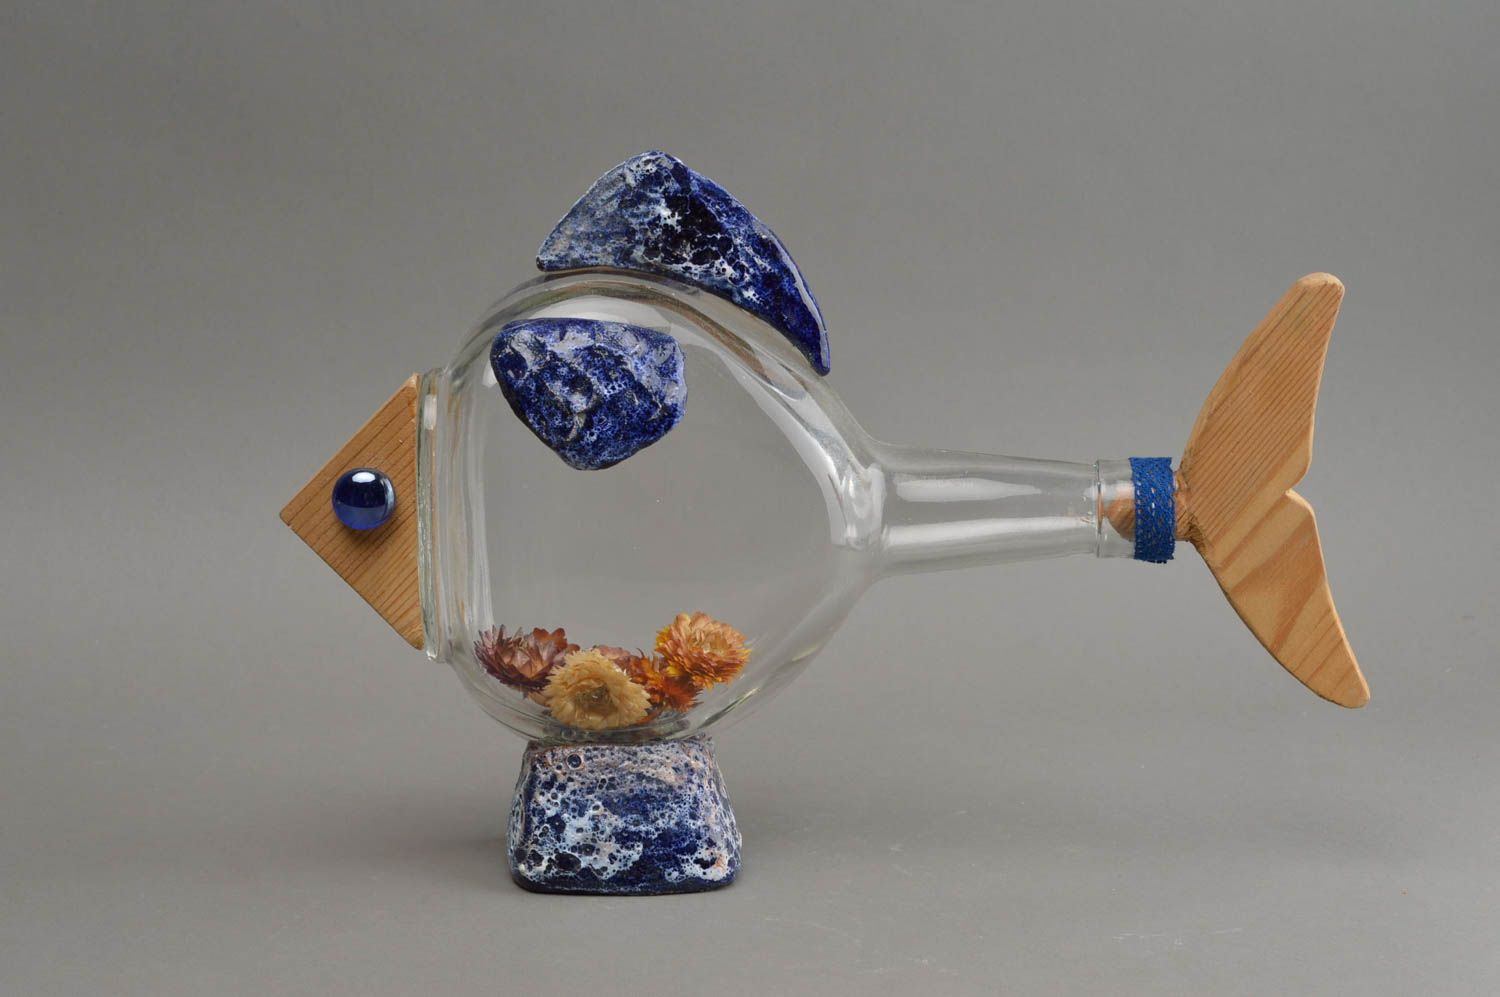 Статуэтка рыбы птицы на основе стеклянной бутылки ручной работы авторский декор фото 2